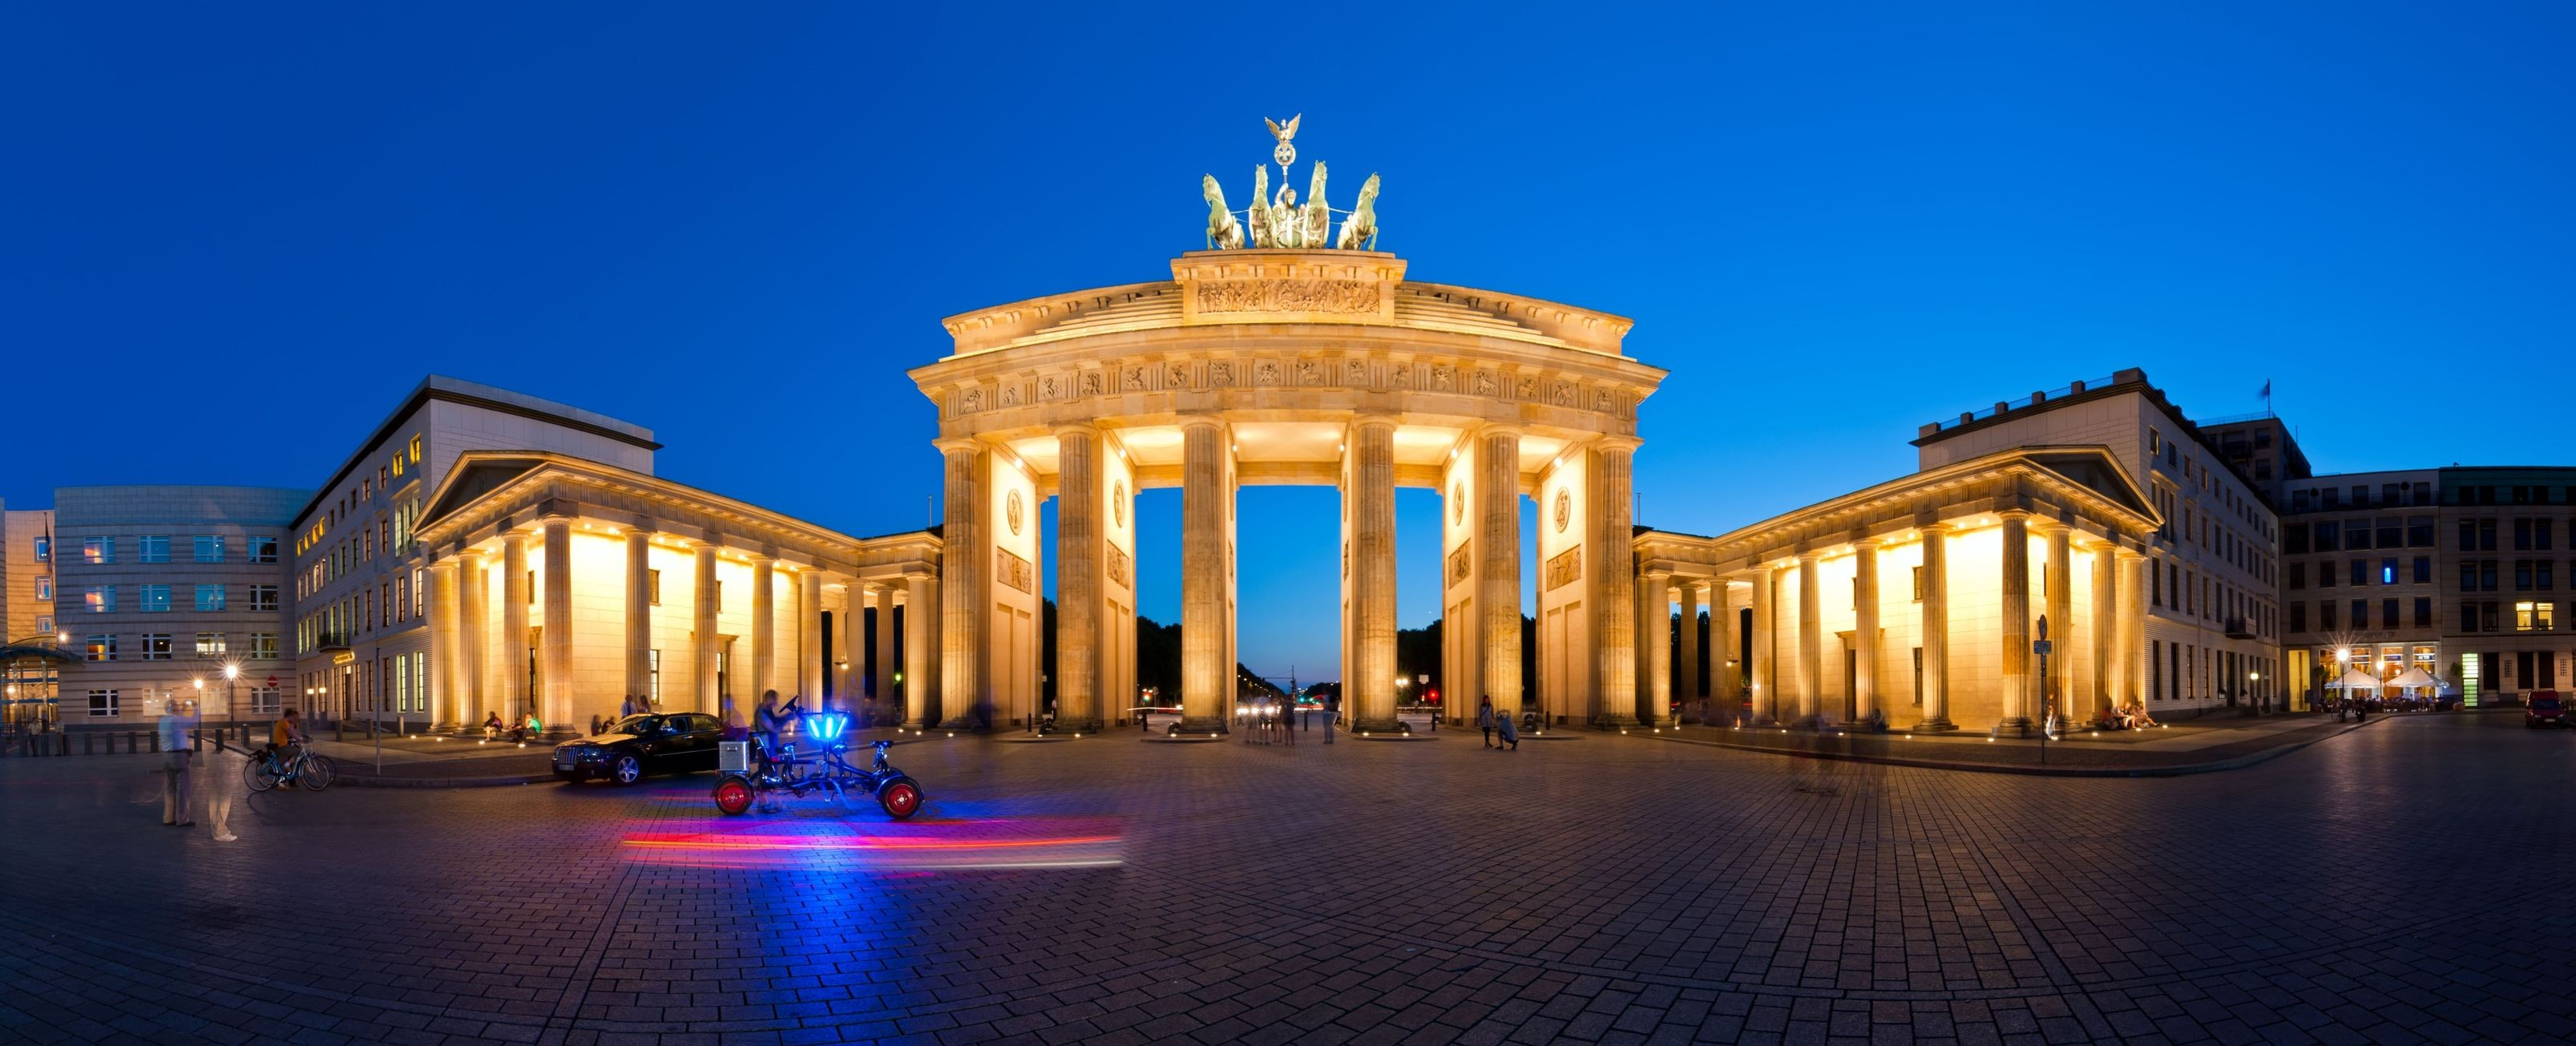 Puerta de Brandenburgo Opción Noches Extras en Berlín Berlín, la Vibrant Capital Alemana rlín e B a da Escapa City Break en Berlín & Excursiones 4 Días / 3 Noches El Precio Incluye Traslados